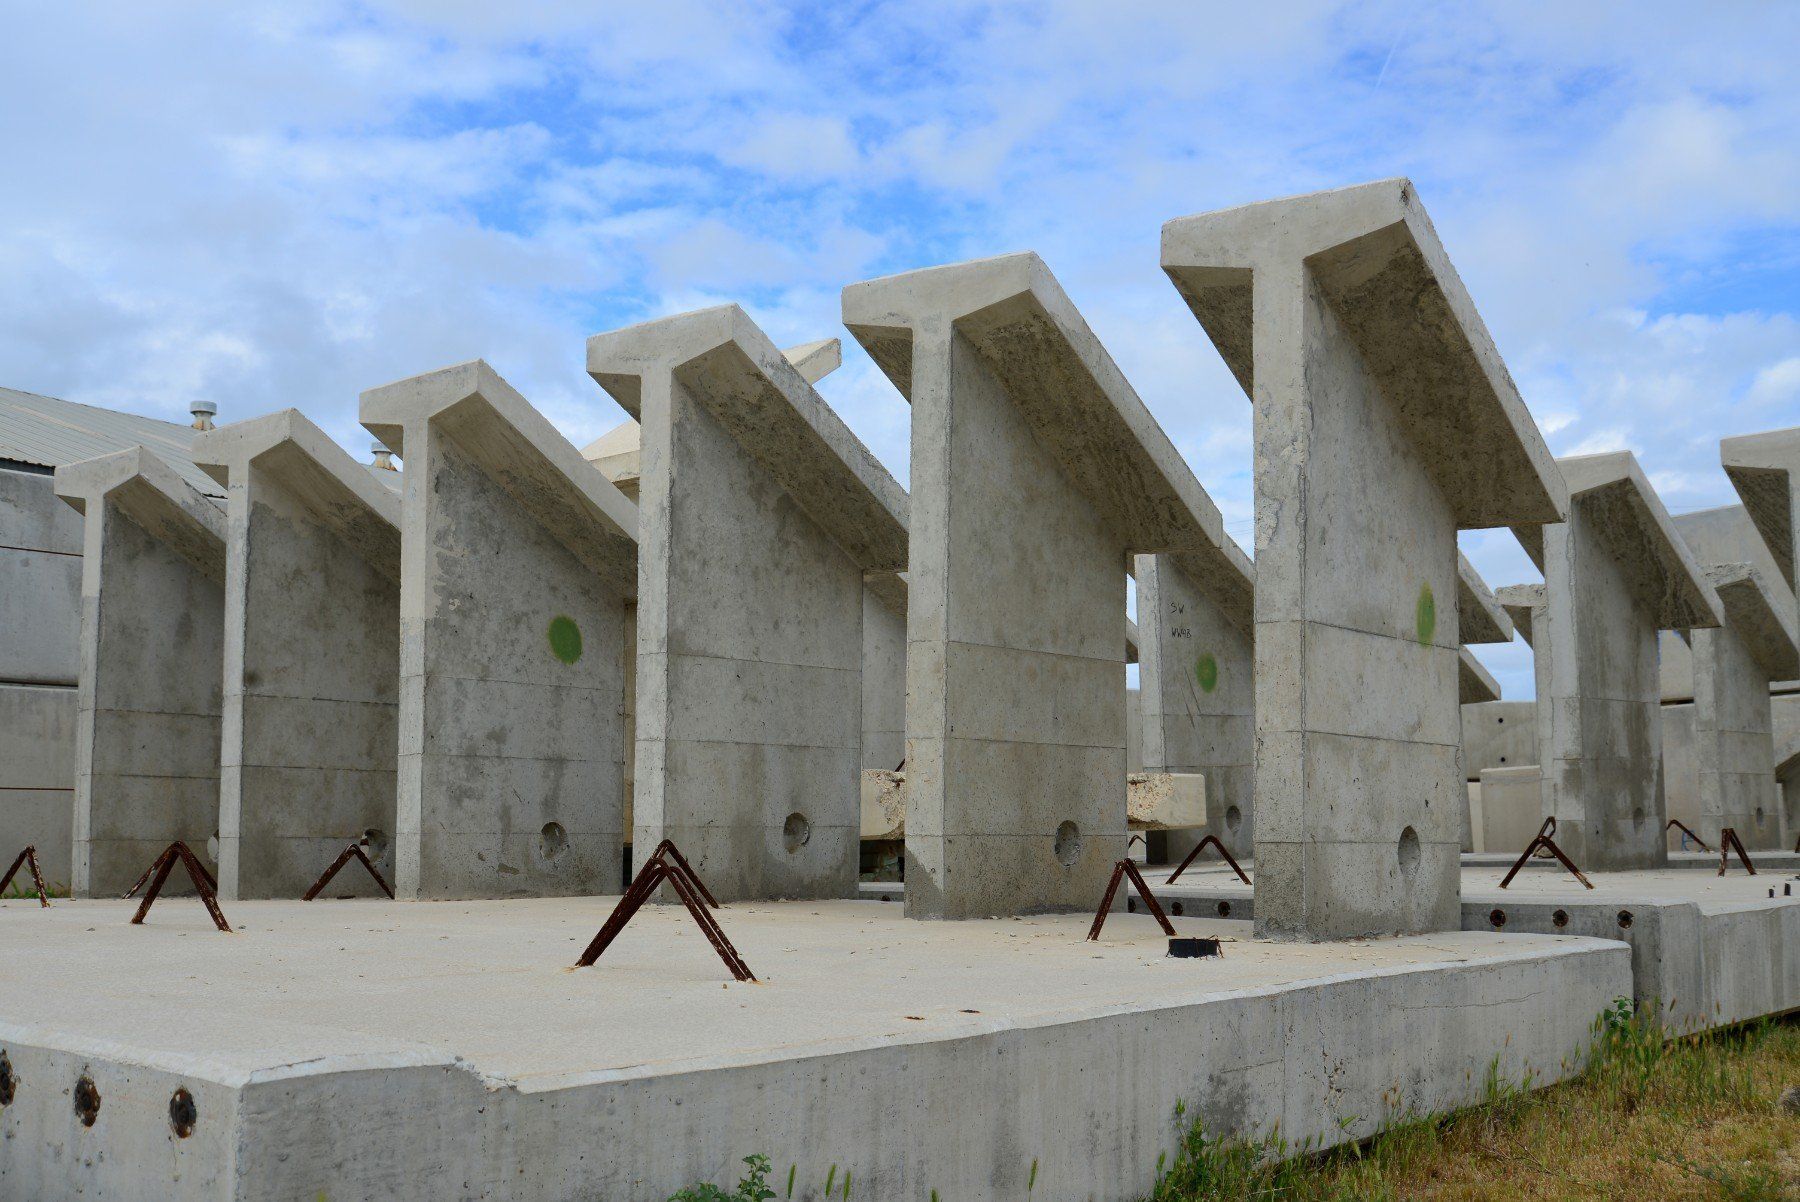 strutture in cemento armato